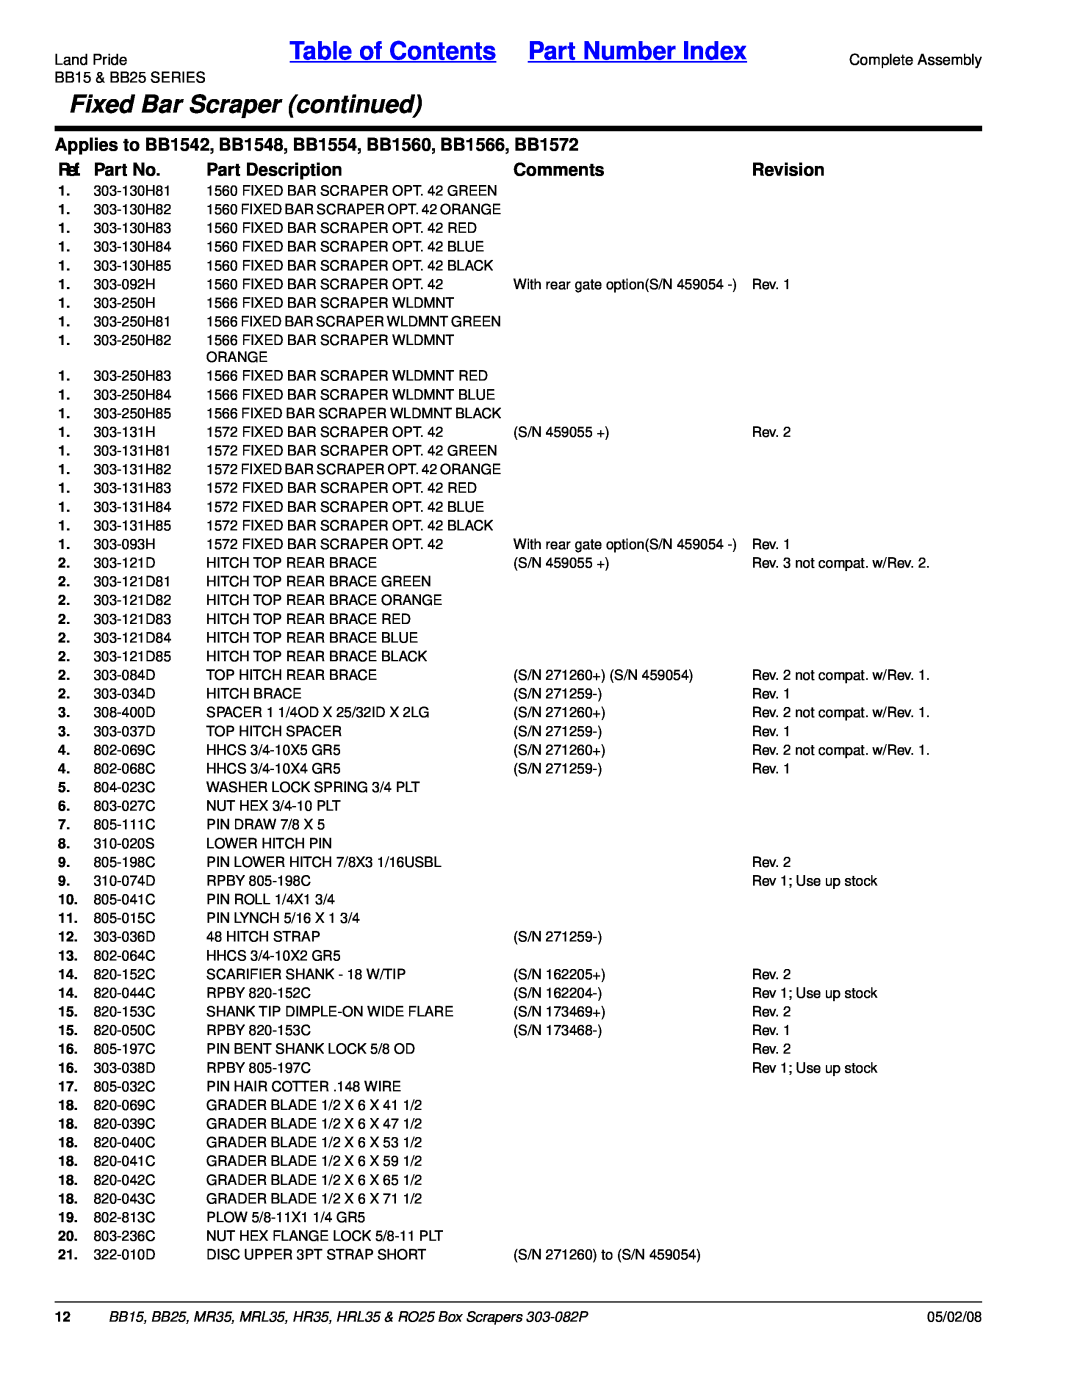 Land Pride HRL35, MR35 Fixed Bar Scraper continued, Table of Contents Part Number Index, Ref. Part No, Part Description 